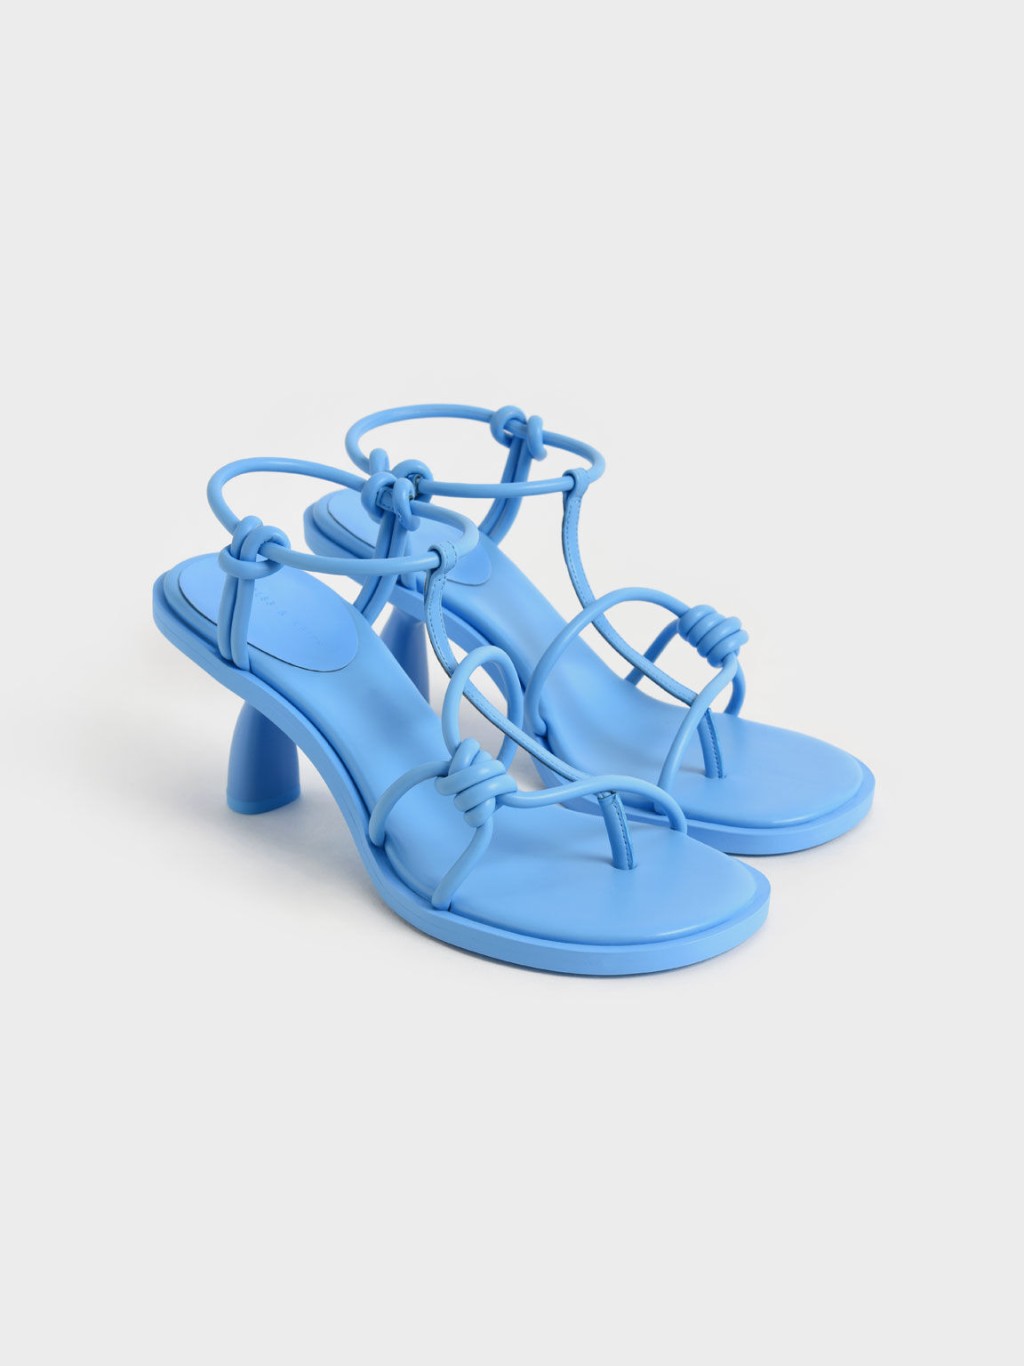 夏季系列藍色高跟涼鞋/$469。